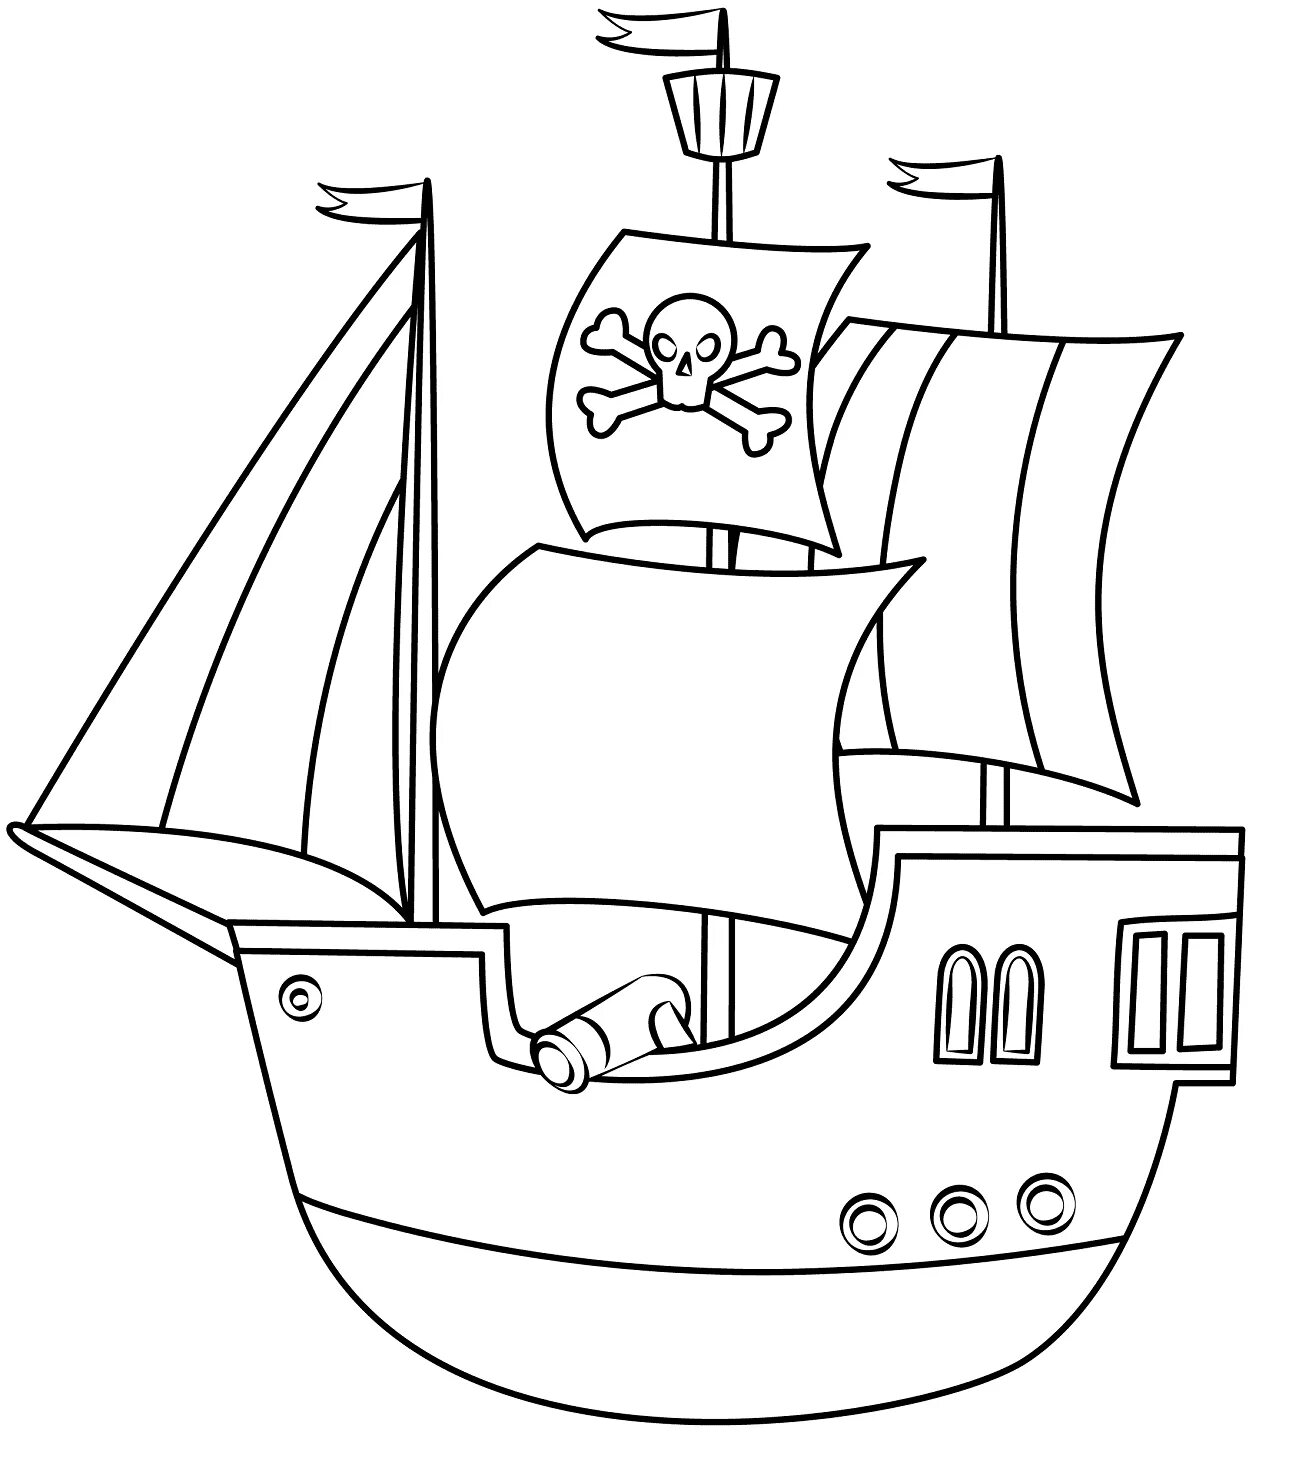 Впечатляющая страница раскраски пиратского корабля для детей